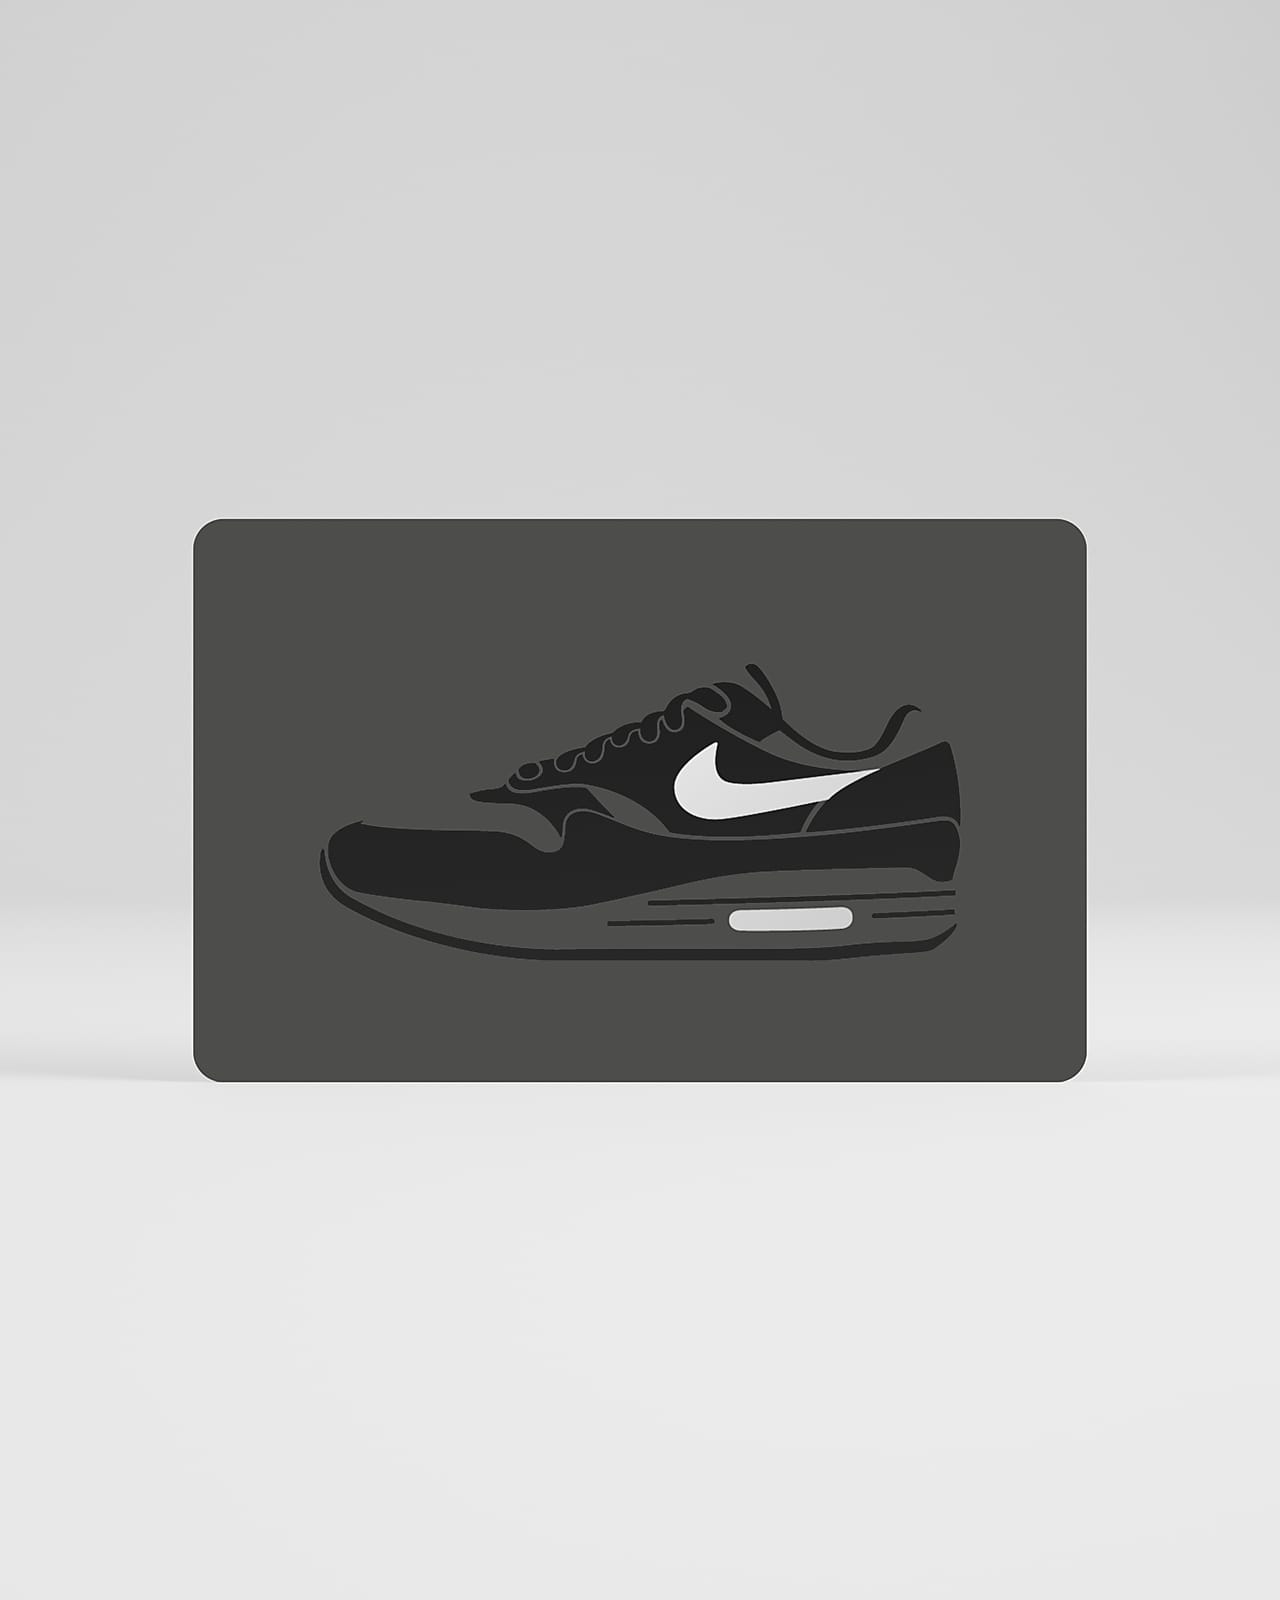 Nike Physical Gift Card Mailed in a Mini Nike Shoebox